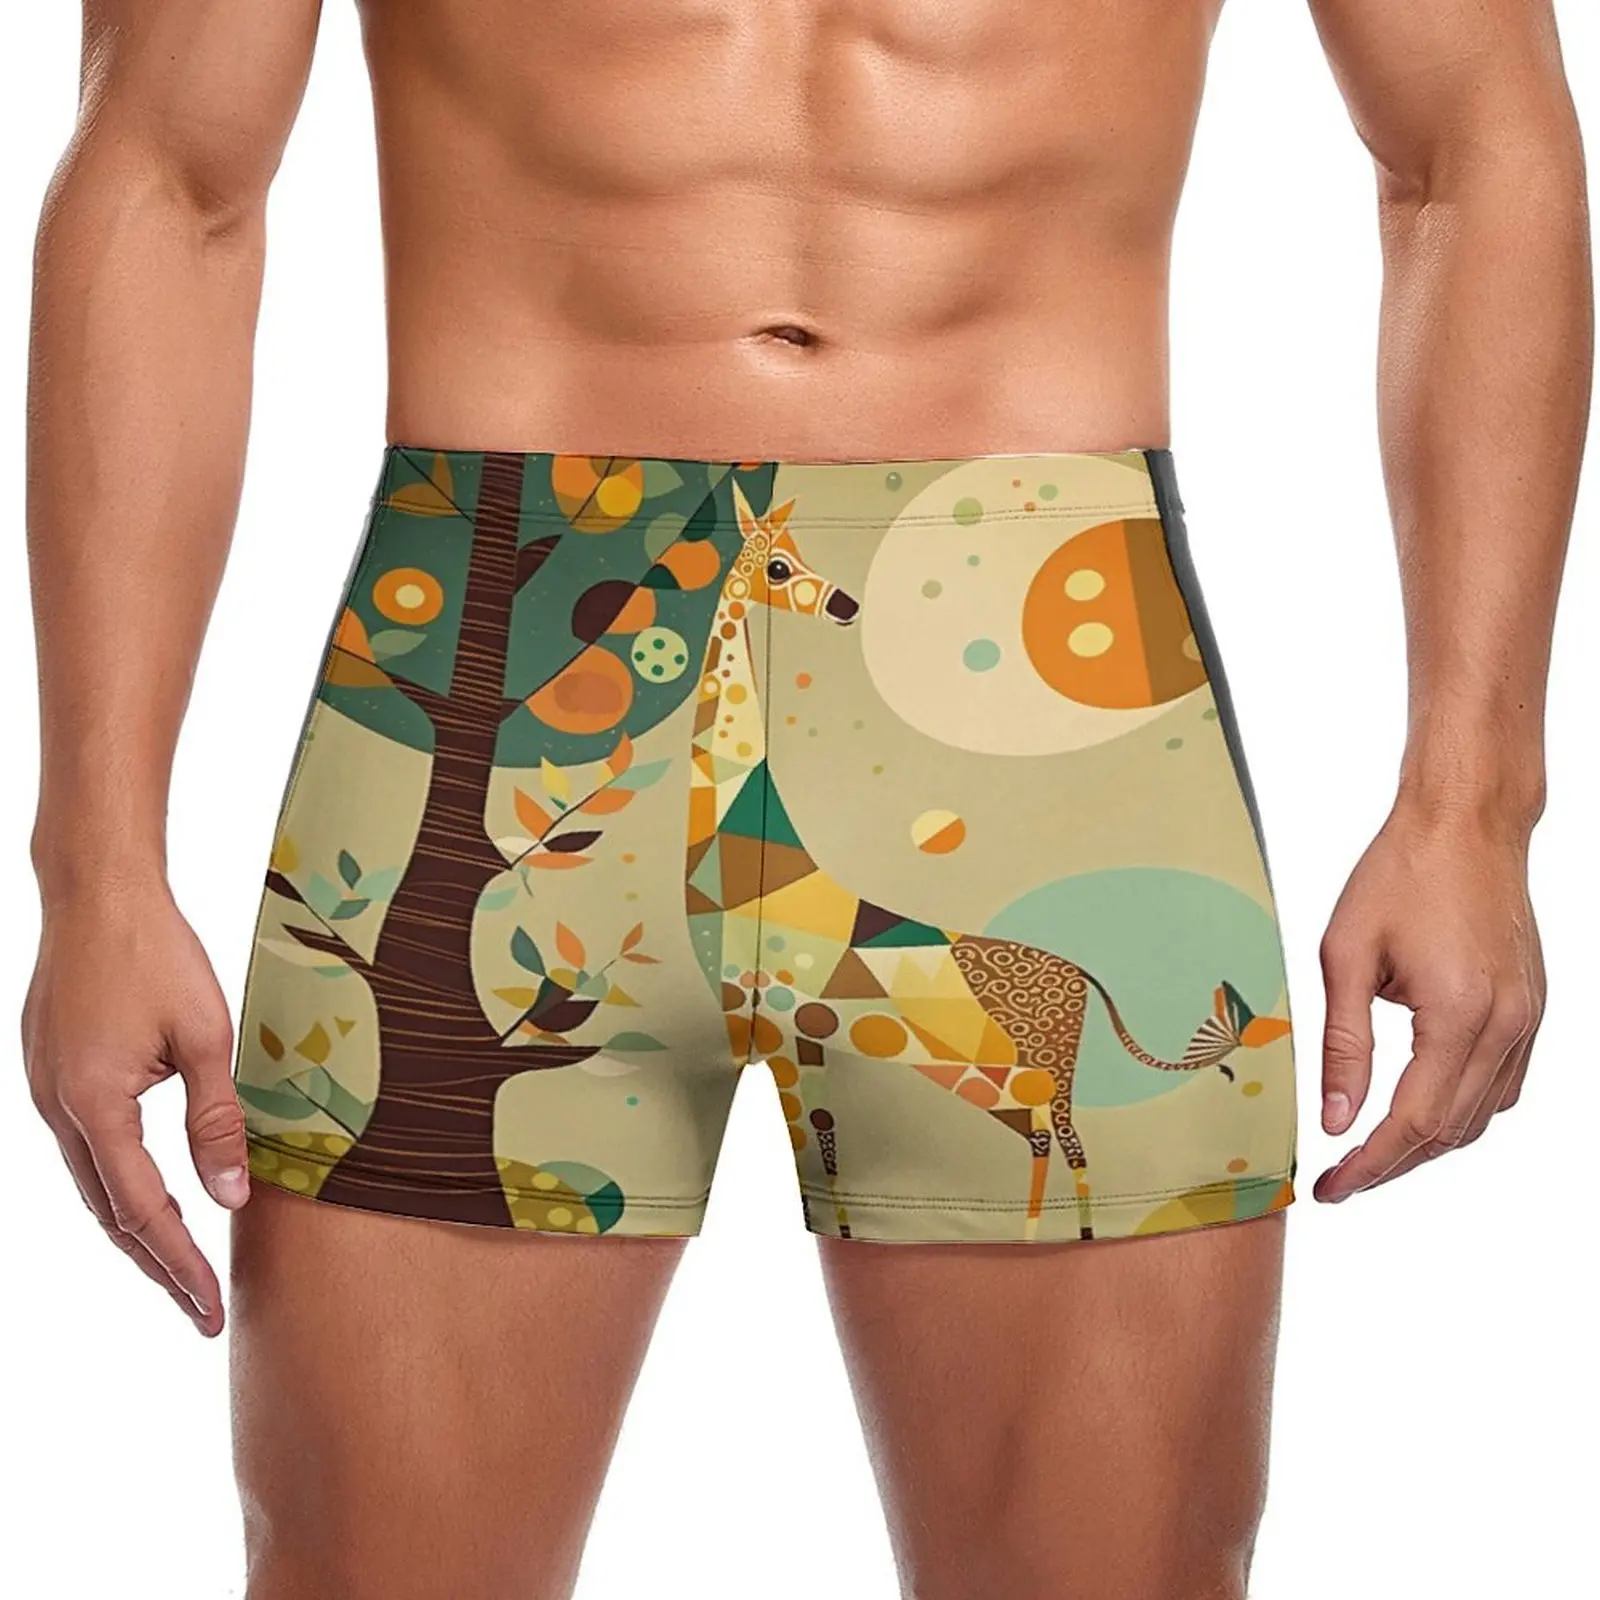 

Плавательные трусы с жирафом в современном художественном стиле, Яркие модные пляжные боксеры для плавания, мужские купальники большого размера